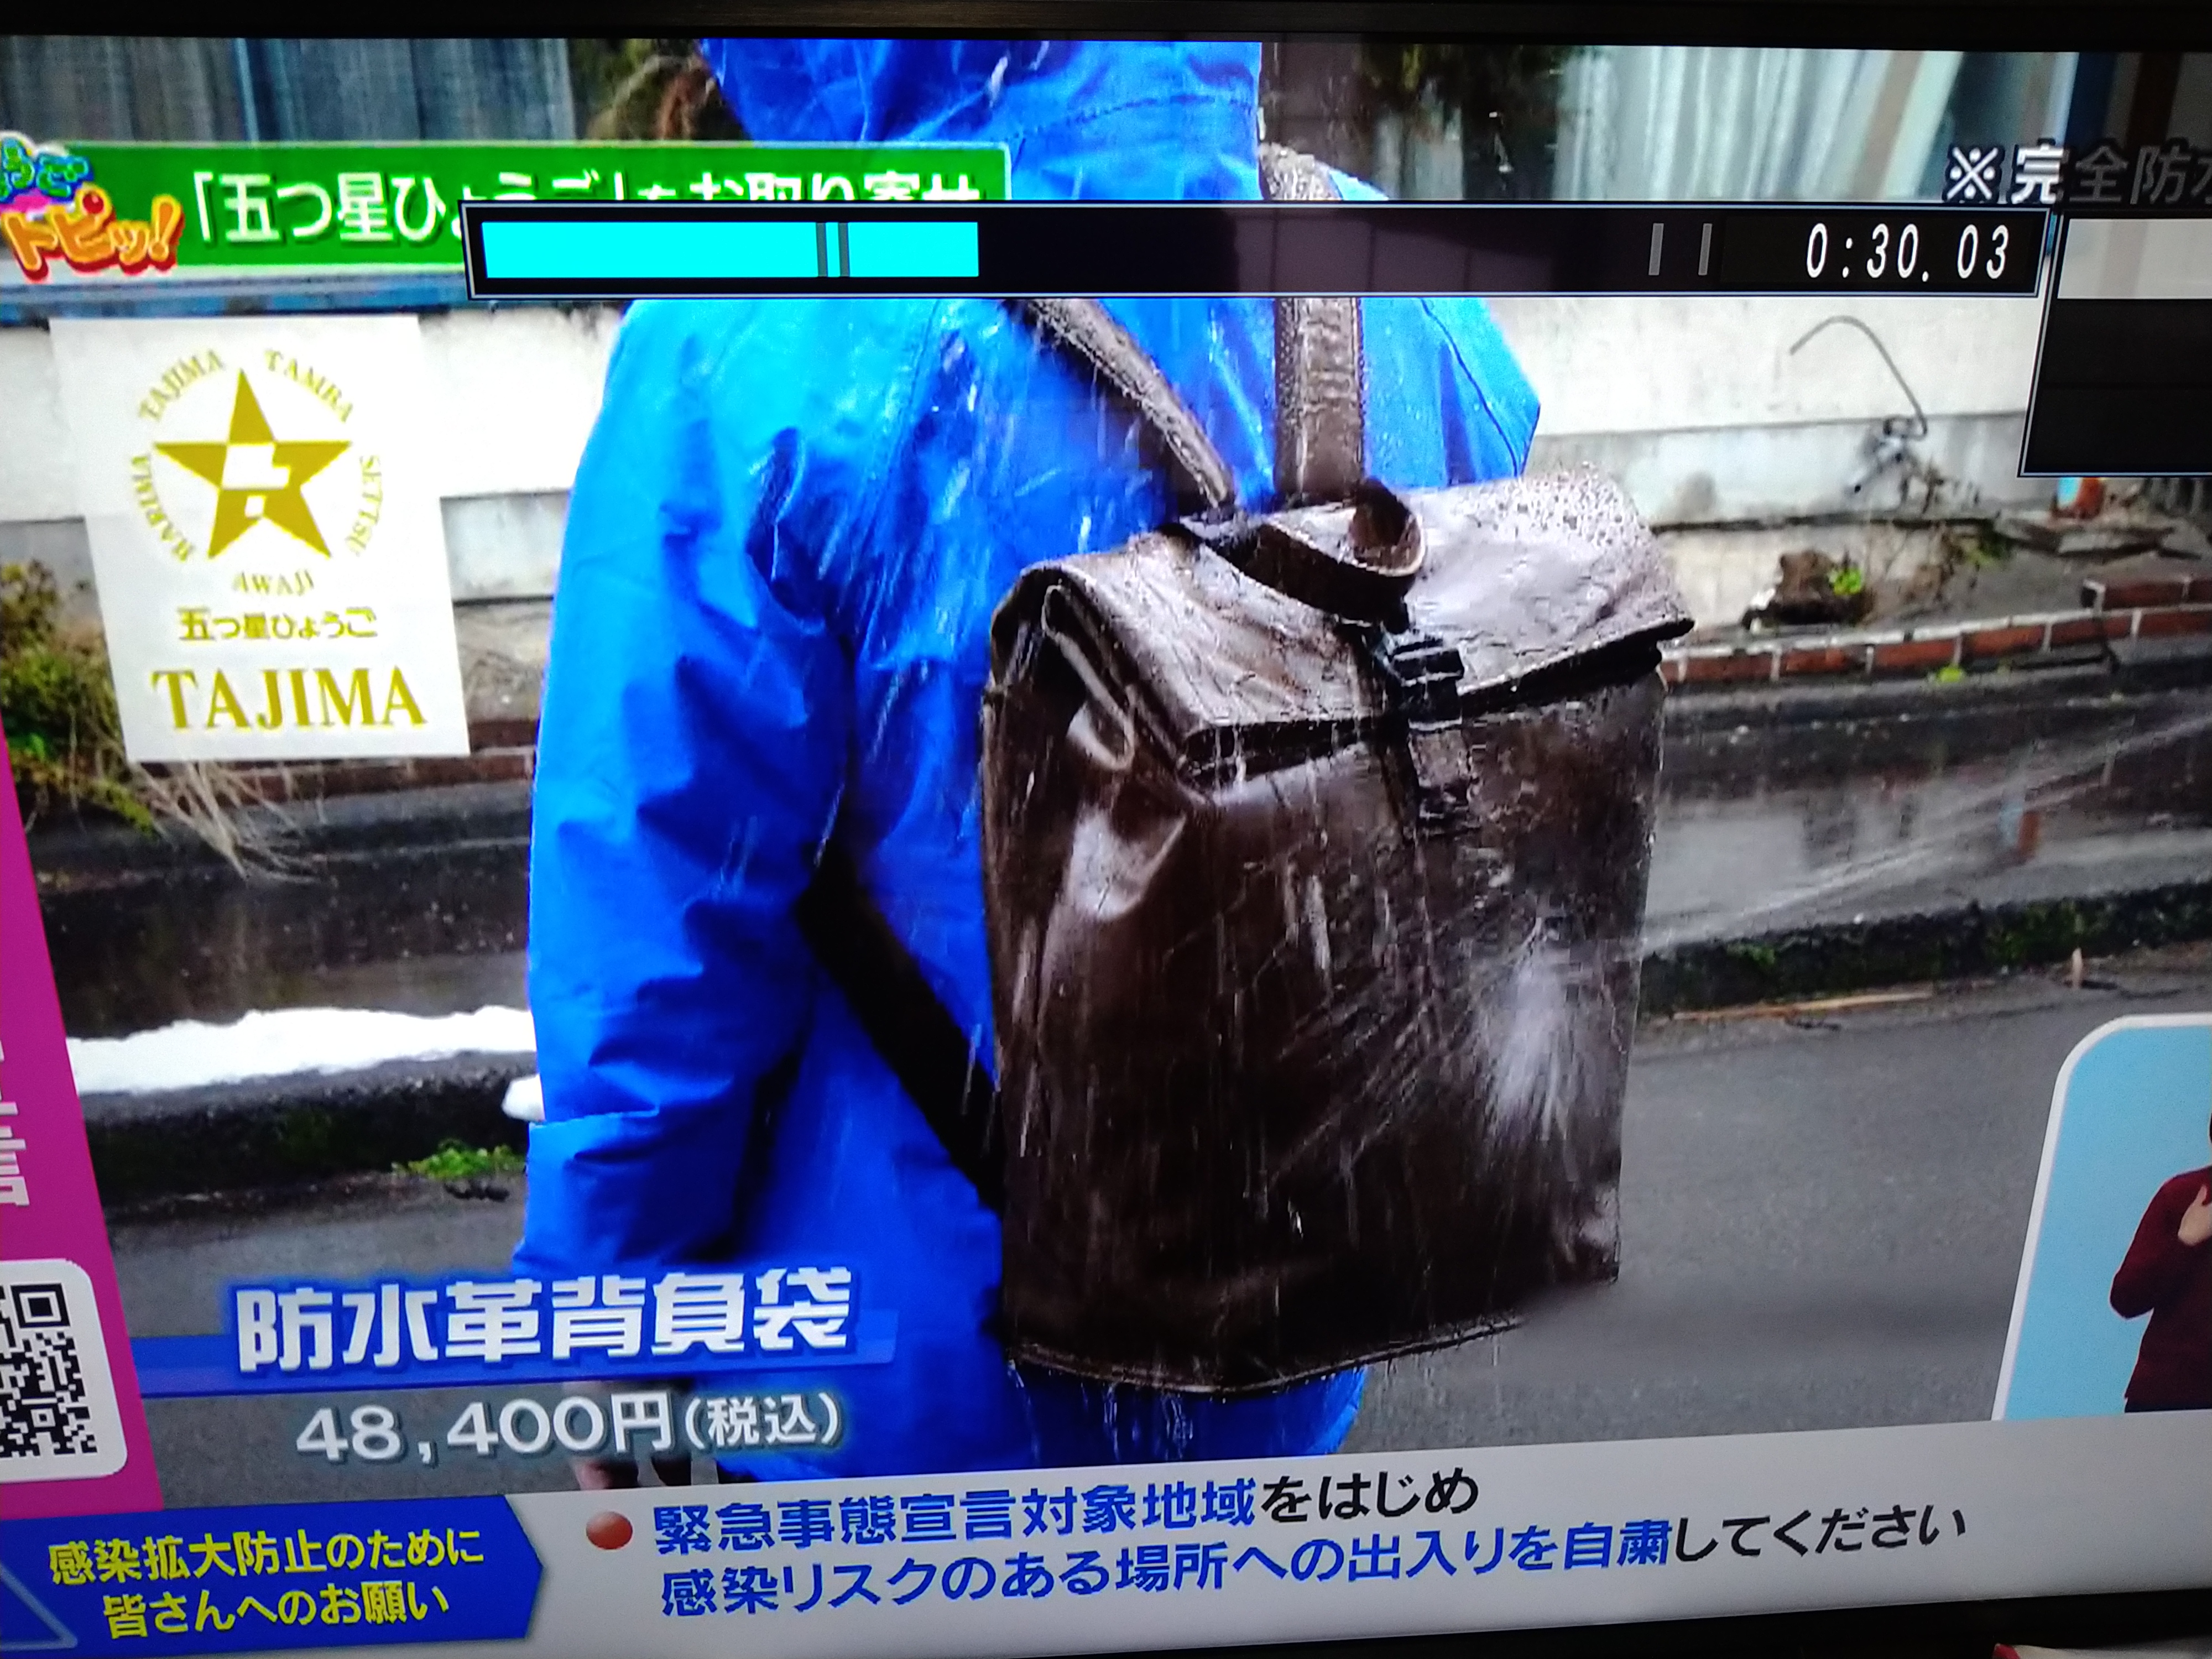 サンテレビ「ひょうご発信」で防水革背負い袋が紹介されました。